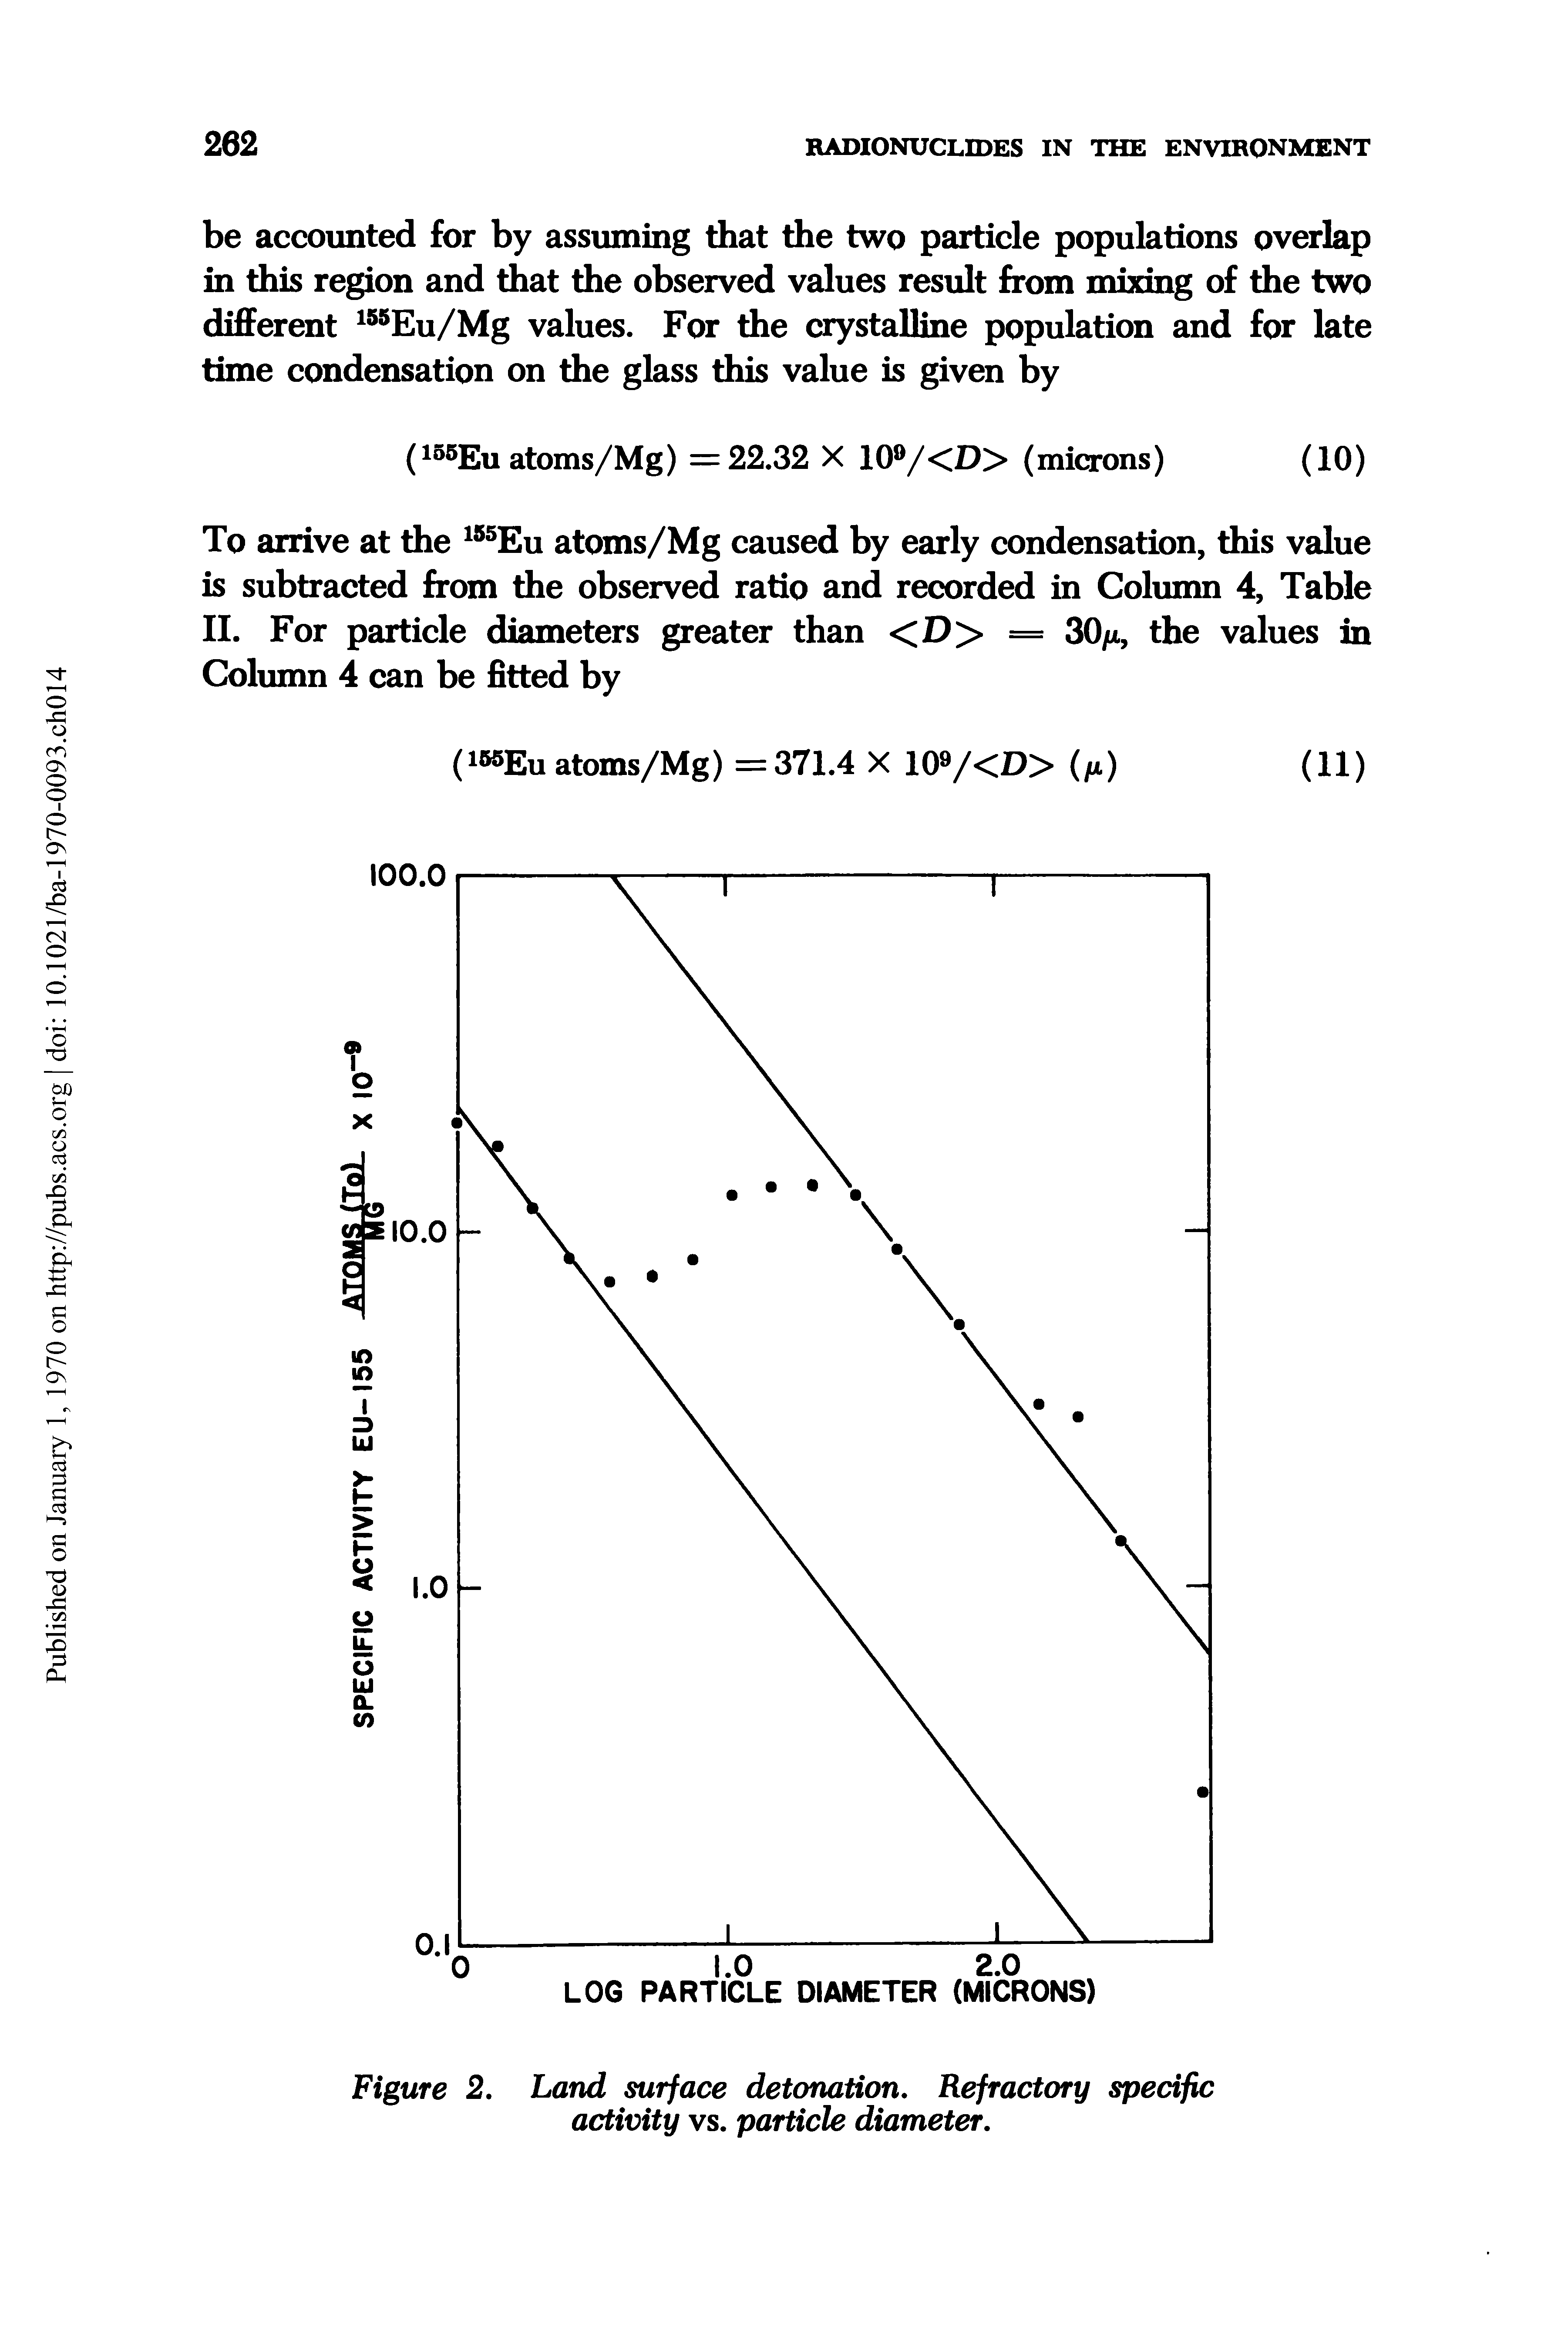 Figure 2. Land surface detonation. Refractory specific activity vs. particle diameter.